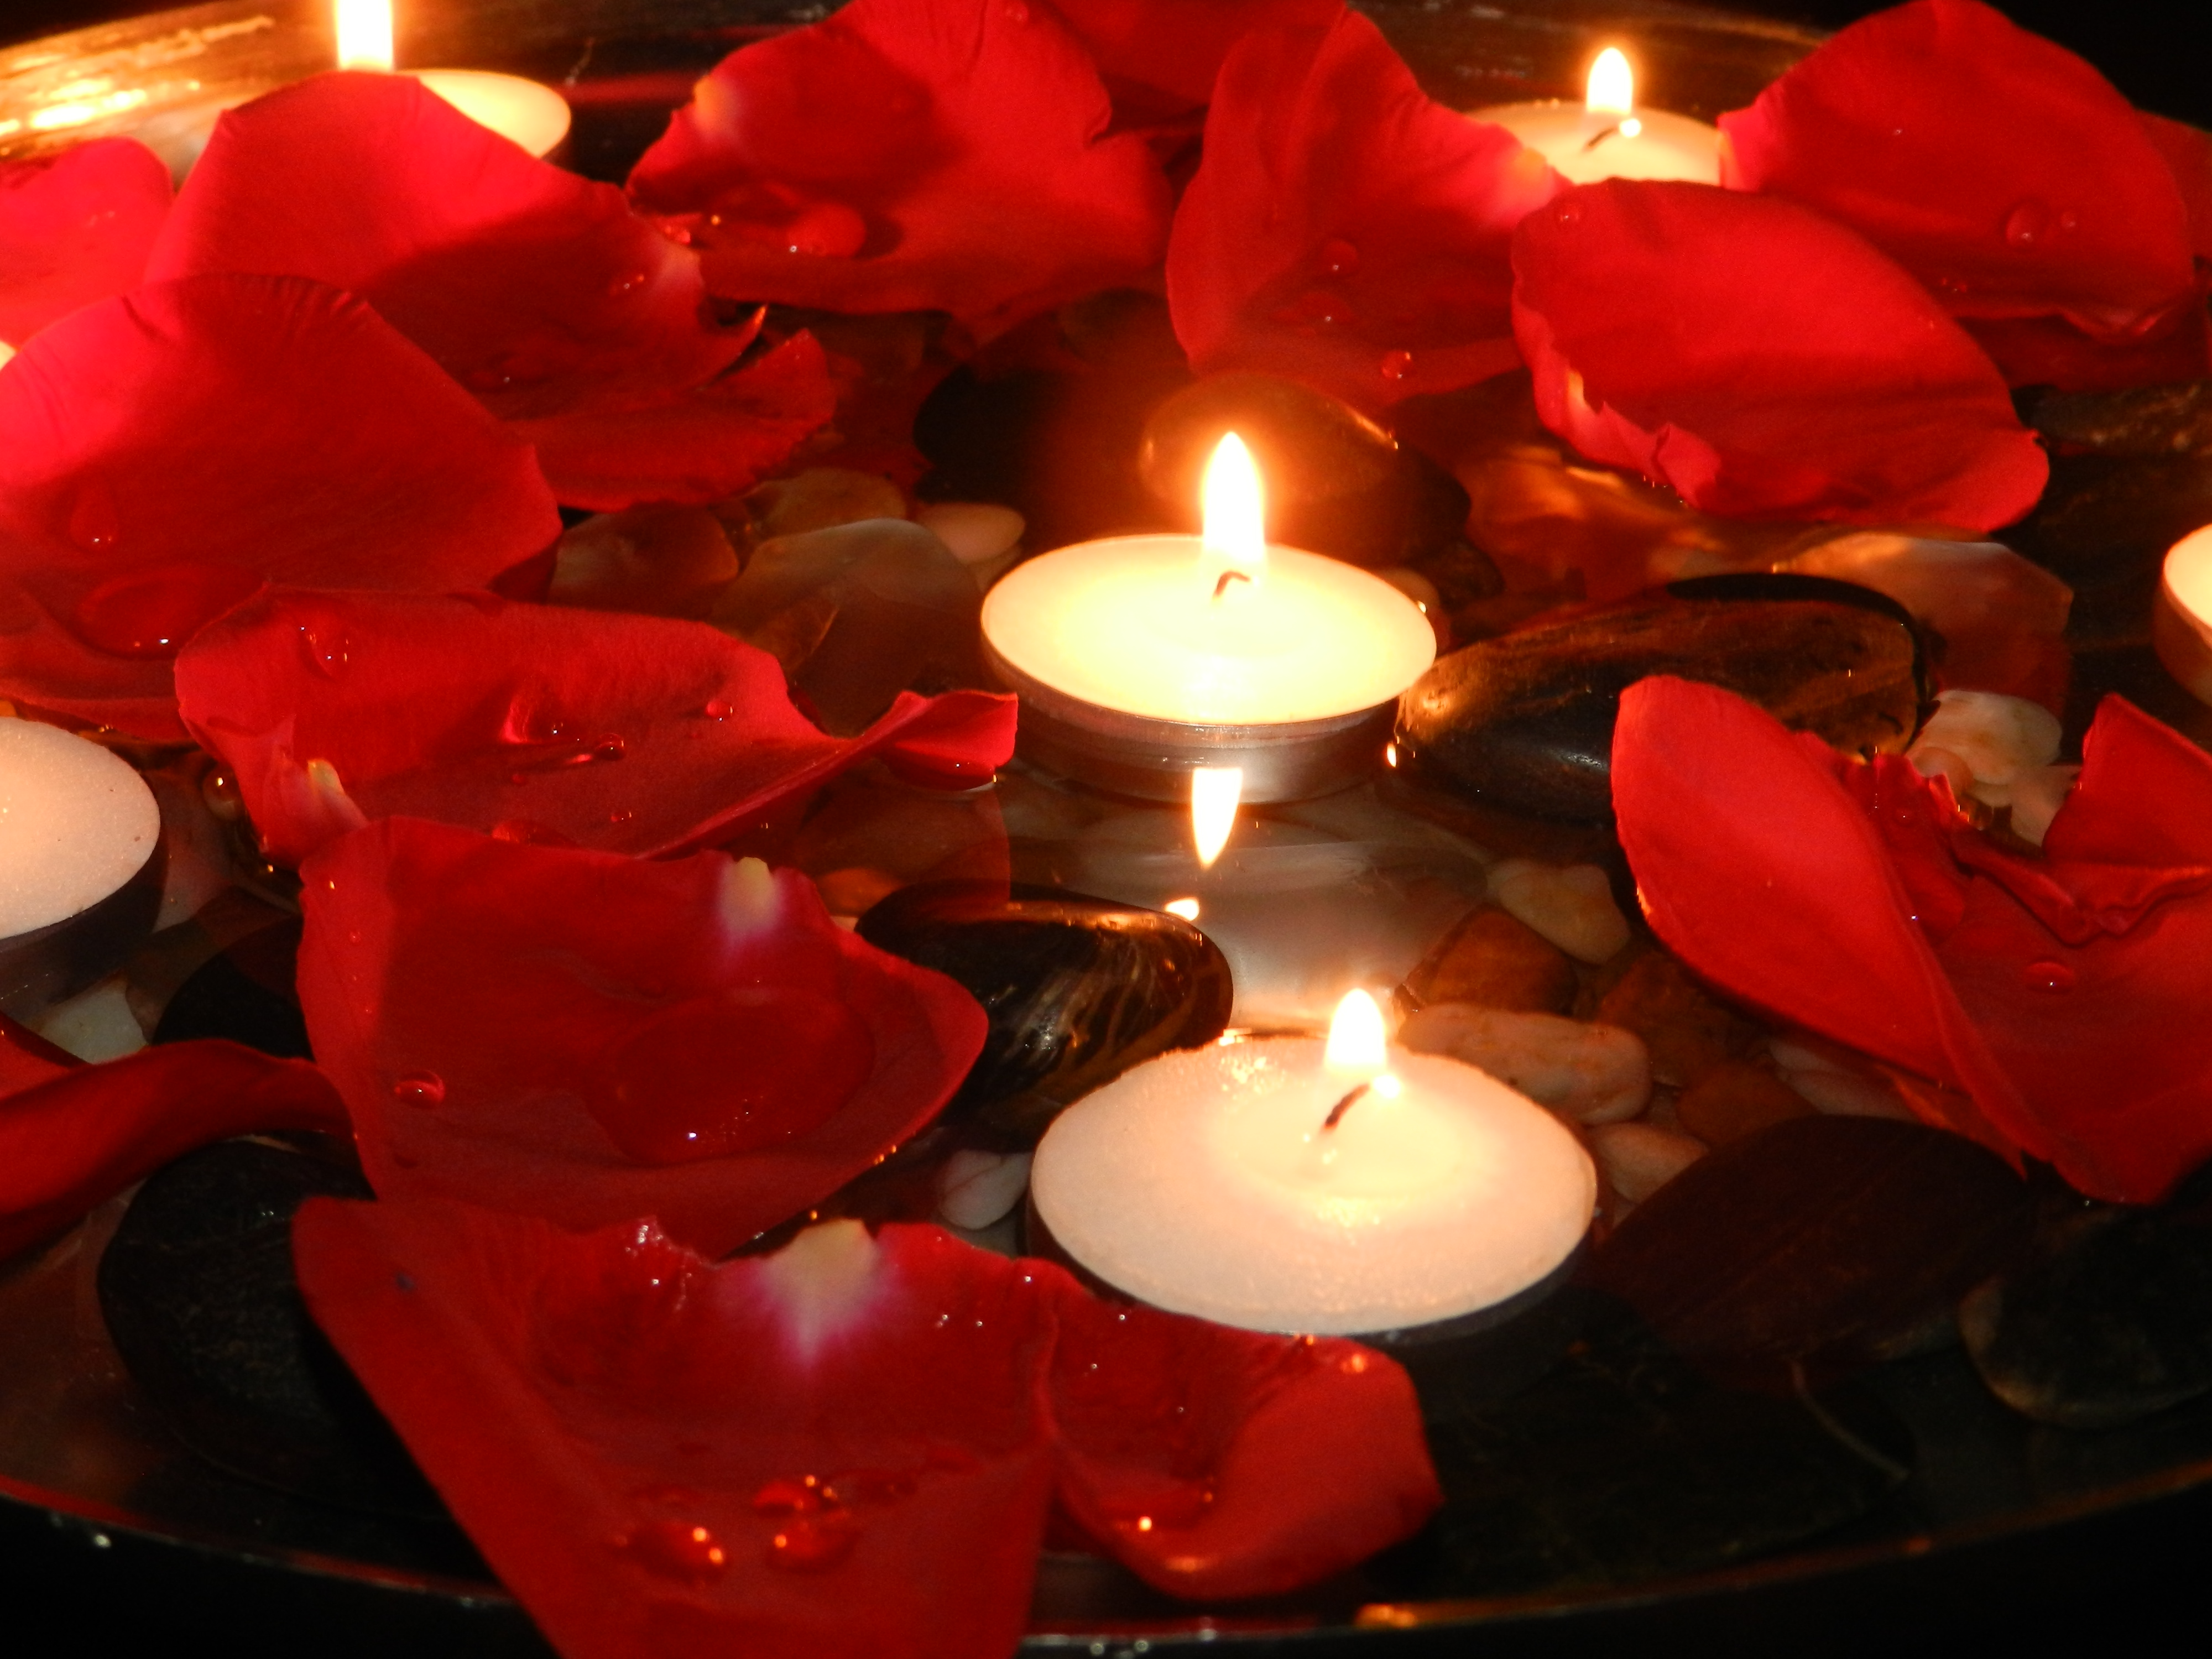 اجمل صور شموع متحركة رومانسية , شمع متحرك حمراء بجودة عالية  Candles Animations 2015_1412110564_279